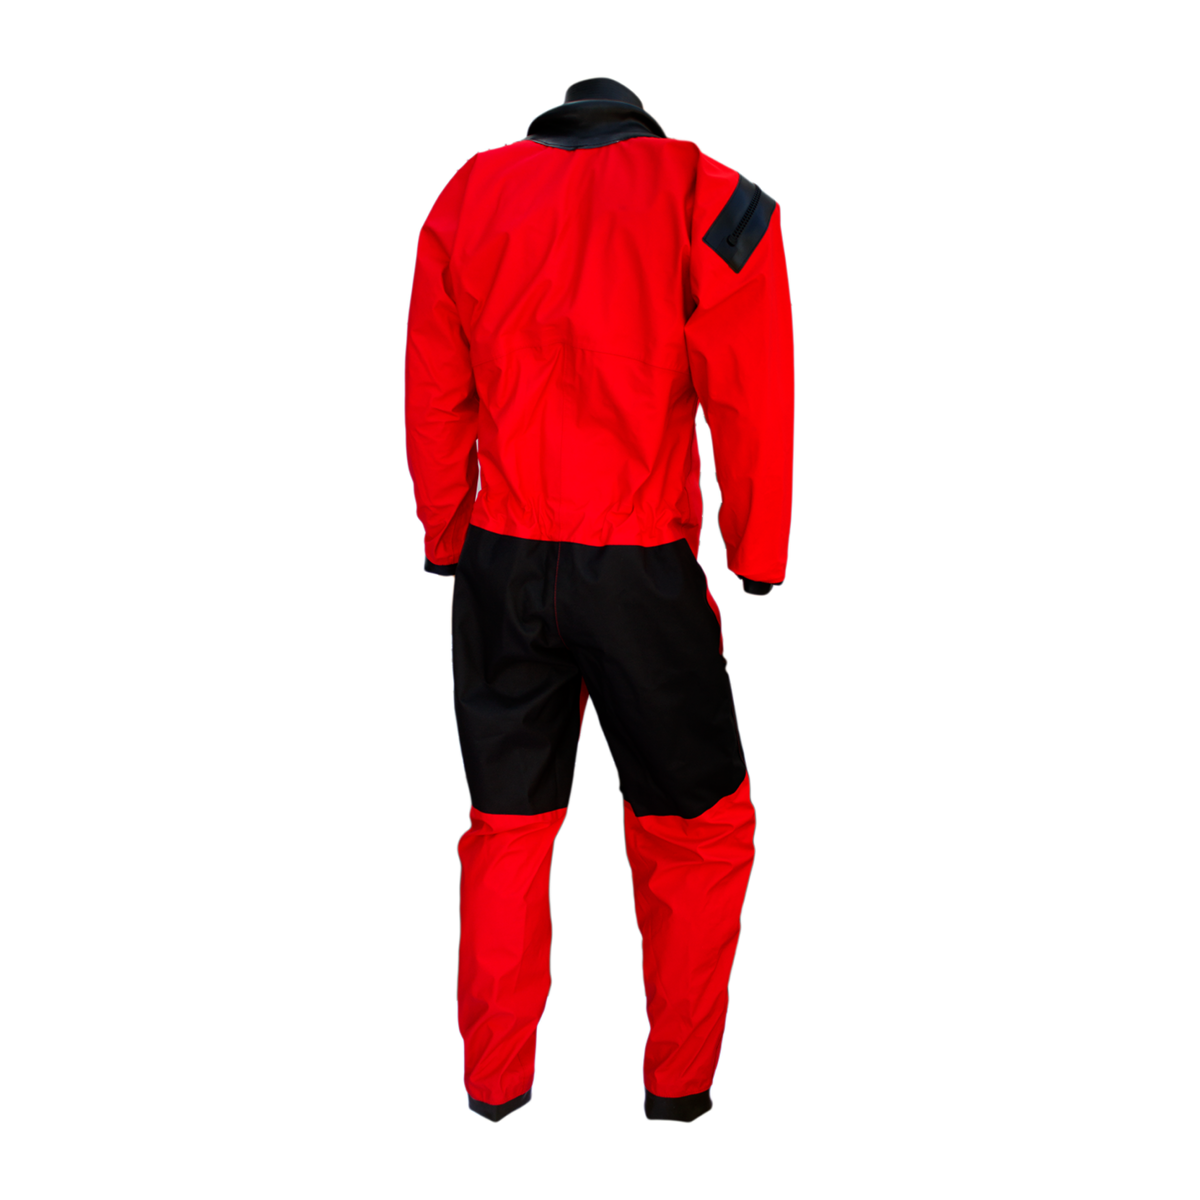 Dry Fashion Profi-Sailing Regatta combinaison étanche respirante unisexe rouge, taille XL